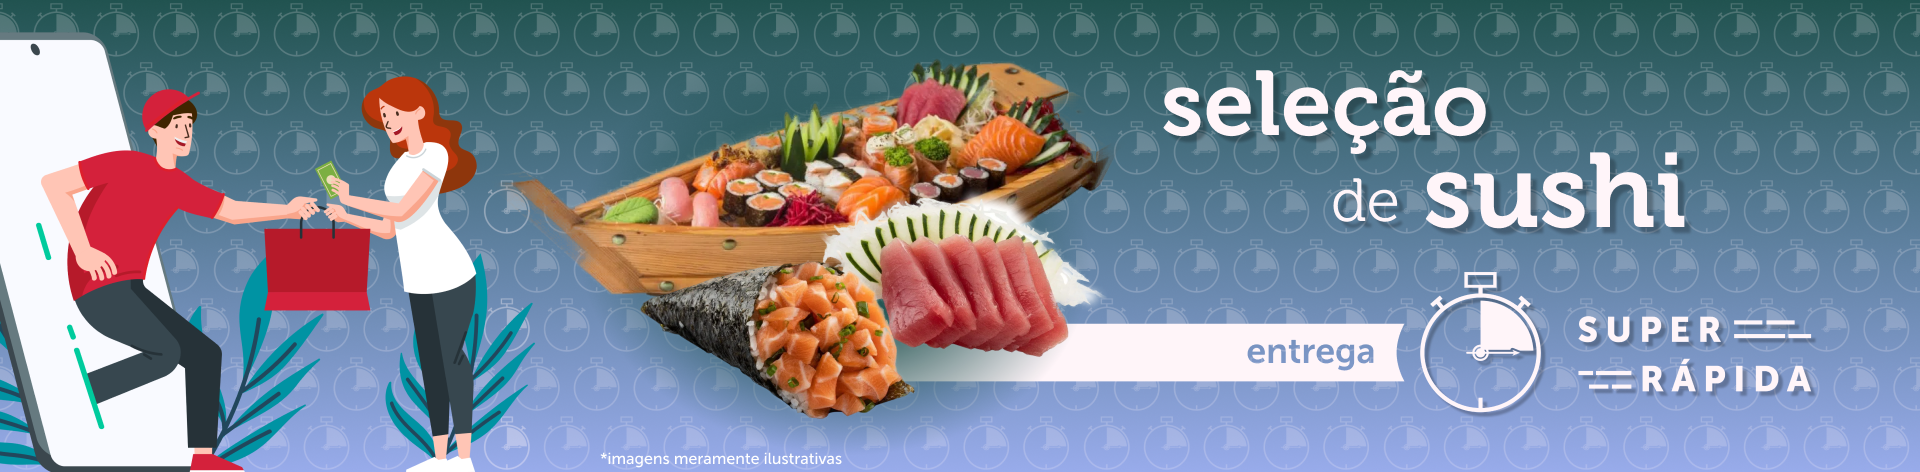 seleção de sushi entrega super rápida